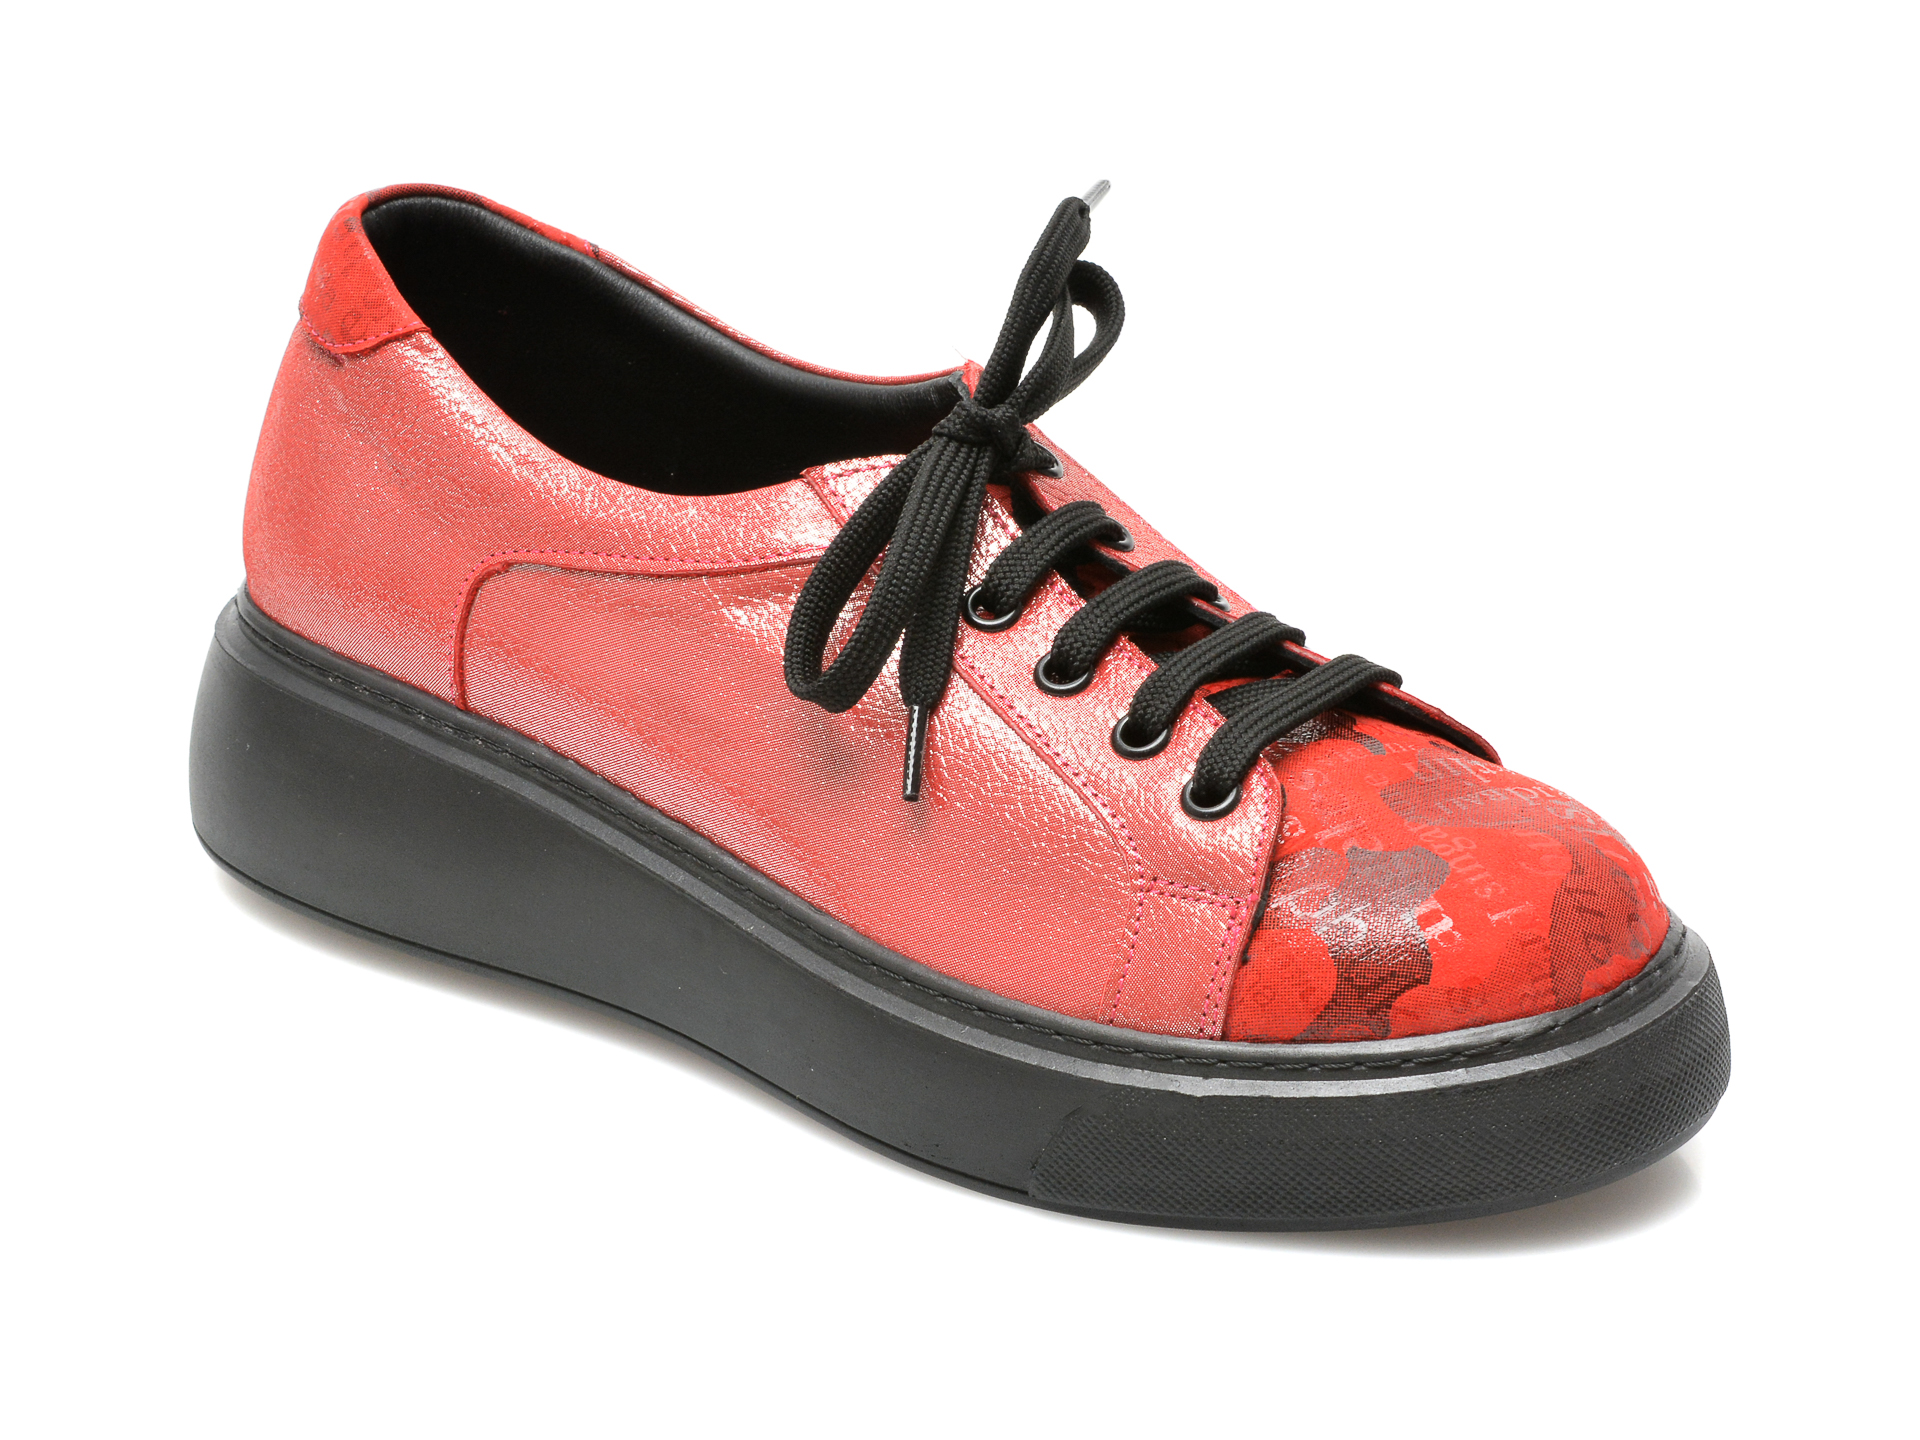 Pantofi FLAVIA PASSINI rosii, 15401, din piele naturala